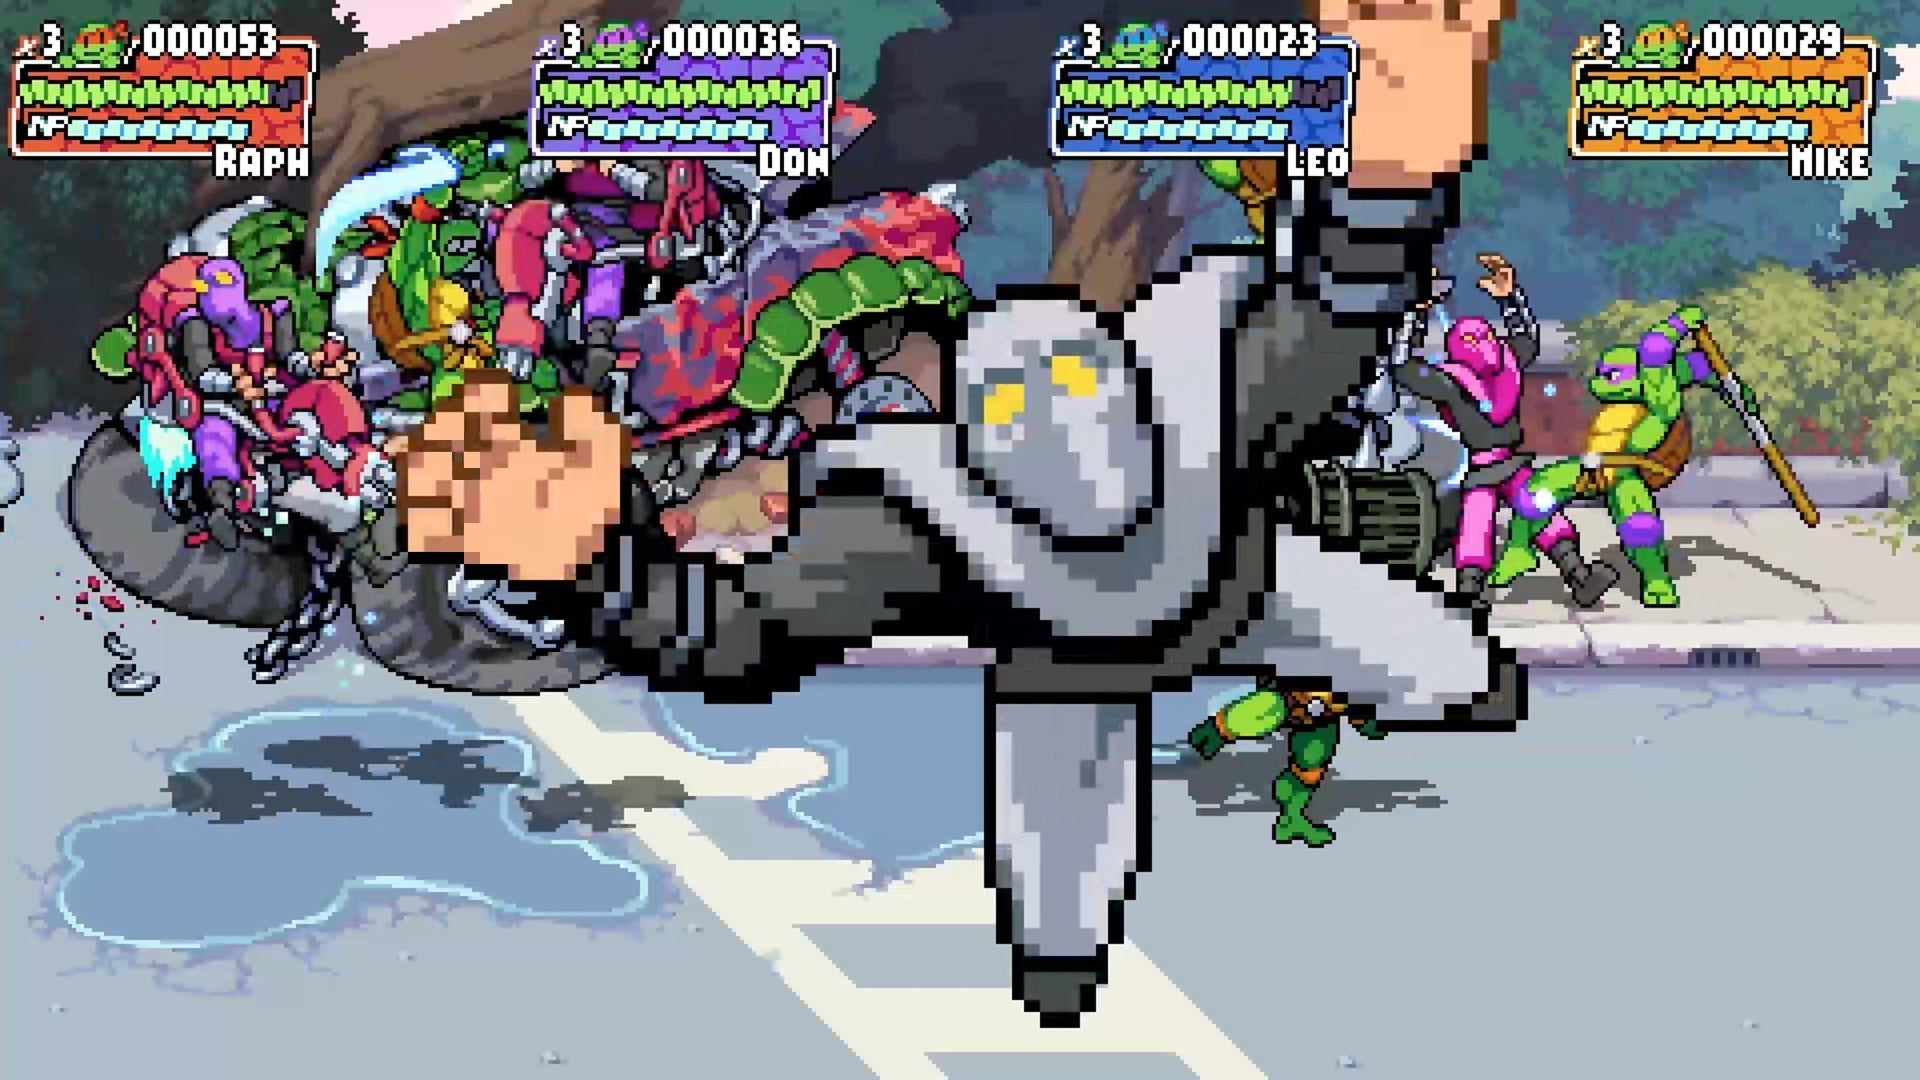 Teenage Mutant Ninja Turtles: Shredder's Revenge for Nintendo